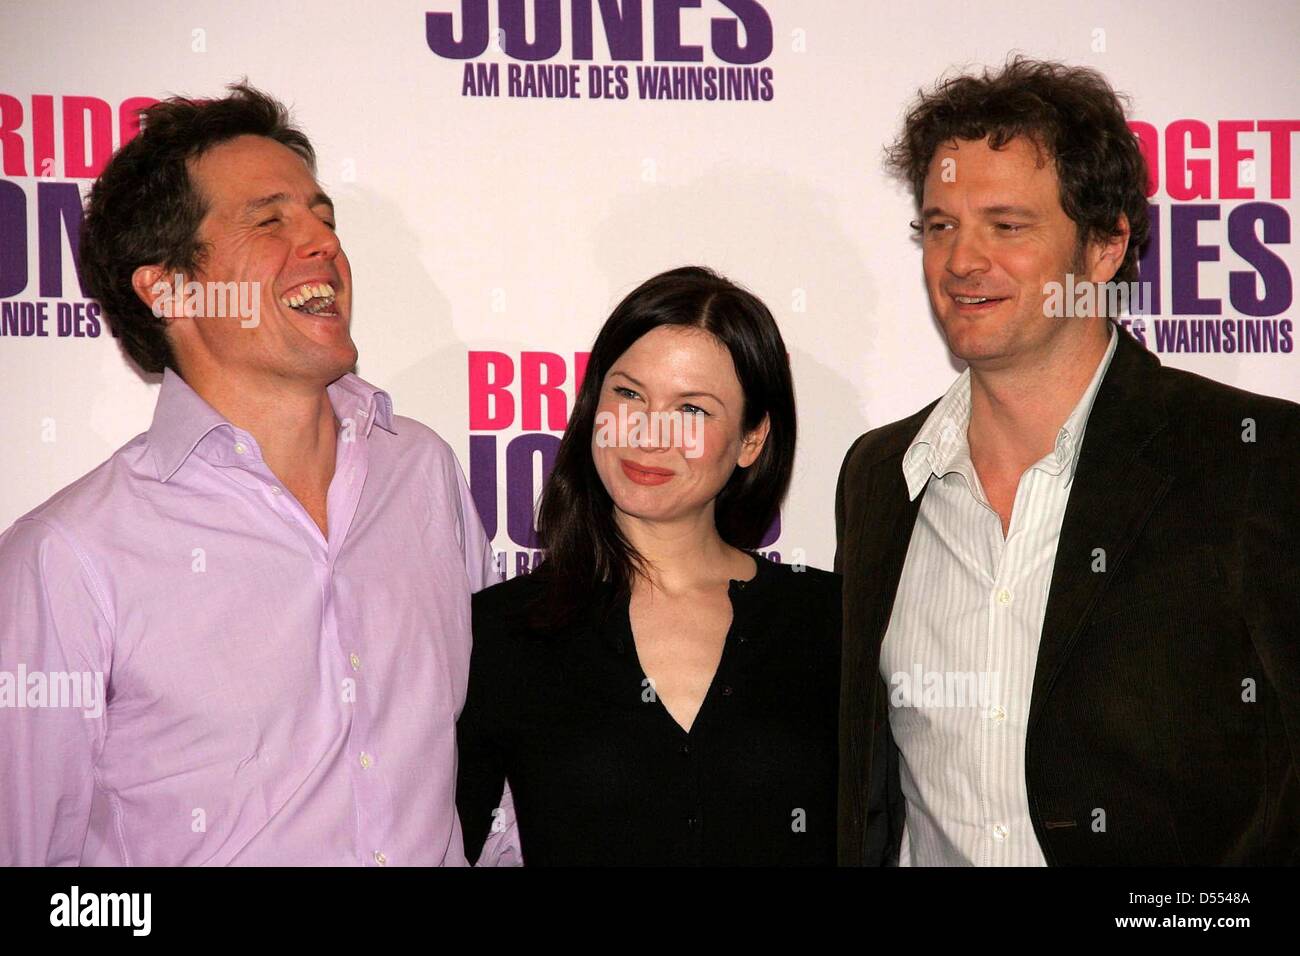 Renee Zellweger (M) mit Hugh Grant (l) und Colin Firth (r) beim Photocall zum Film "Bridget Jones: am Rande des Wahnsinns" in Berlin. Stockfoto